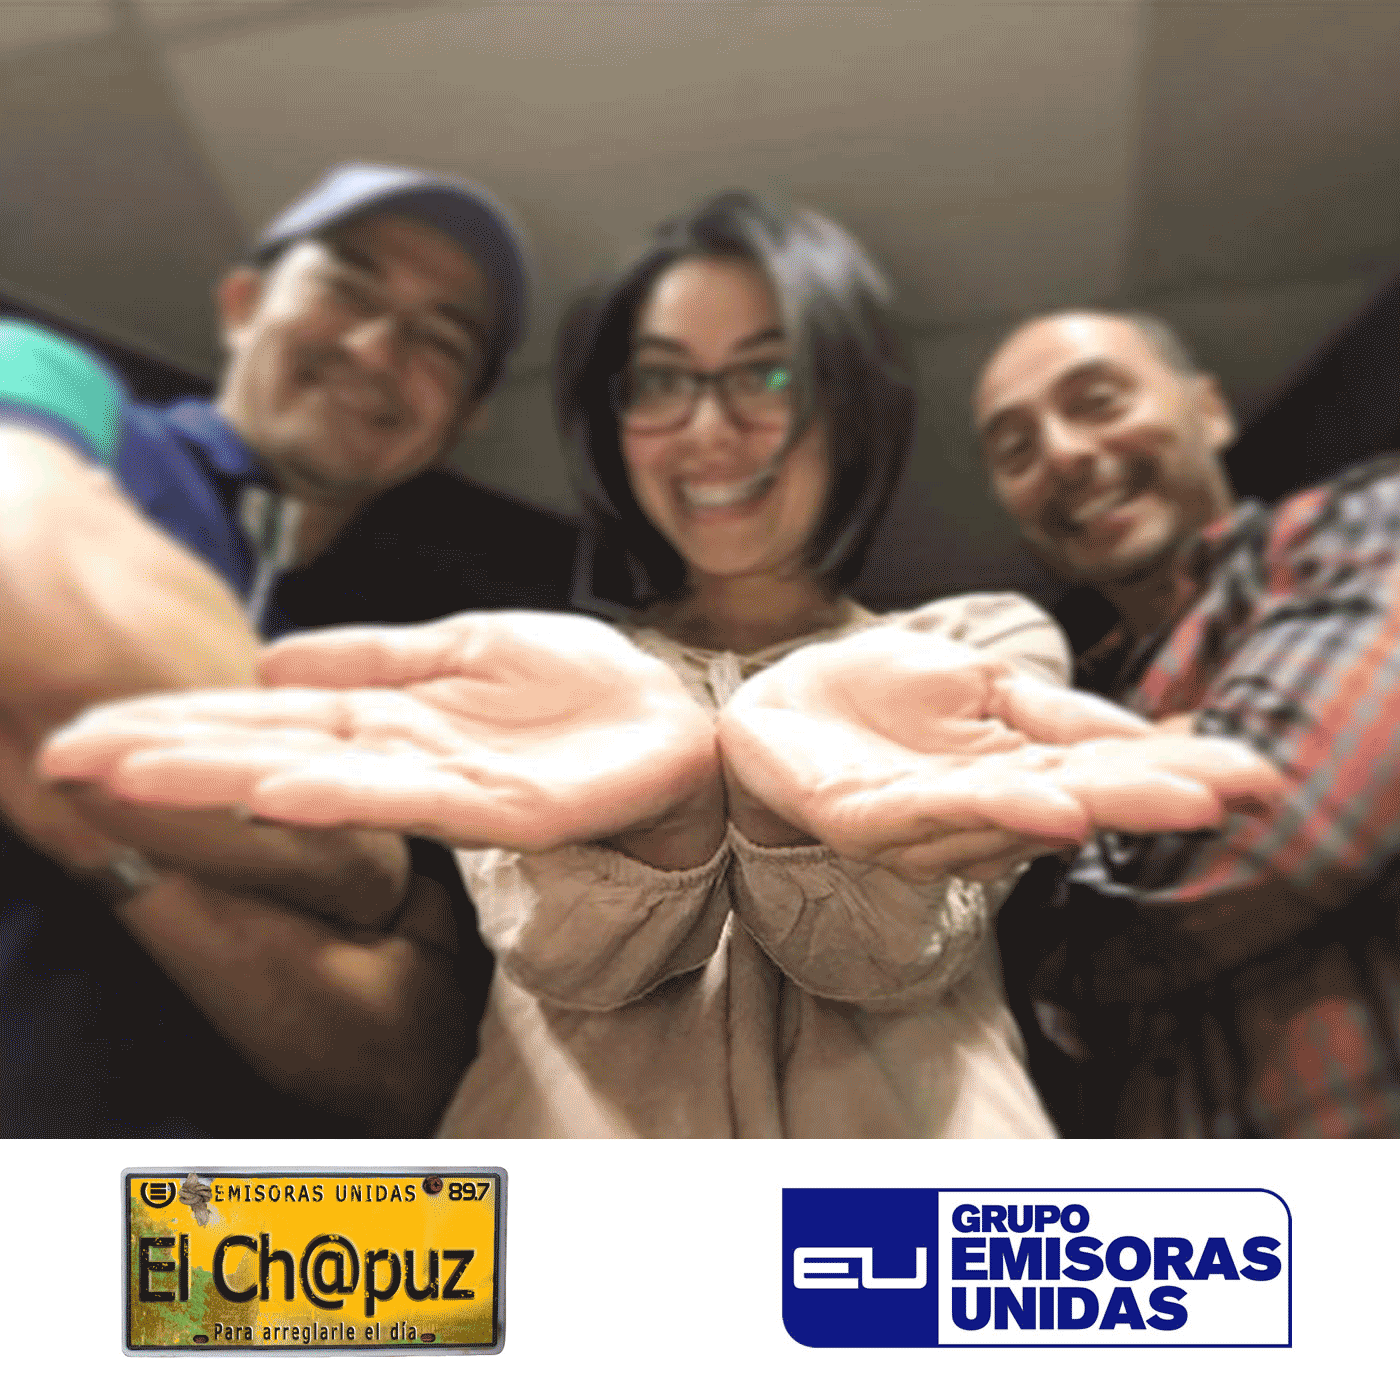 EC49 - El Chapuz - Emisoras unidas - #DiarioDeUnDiadeTrabajo